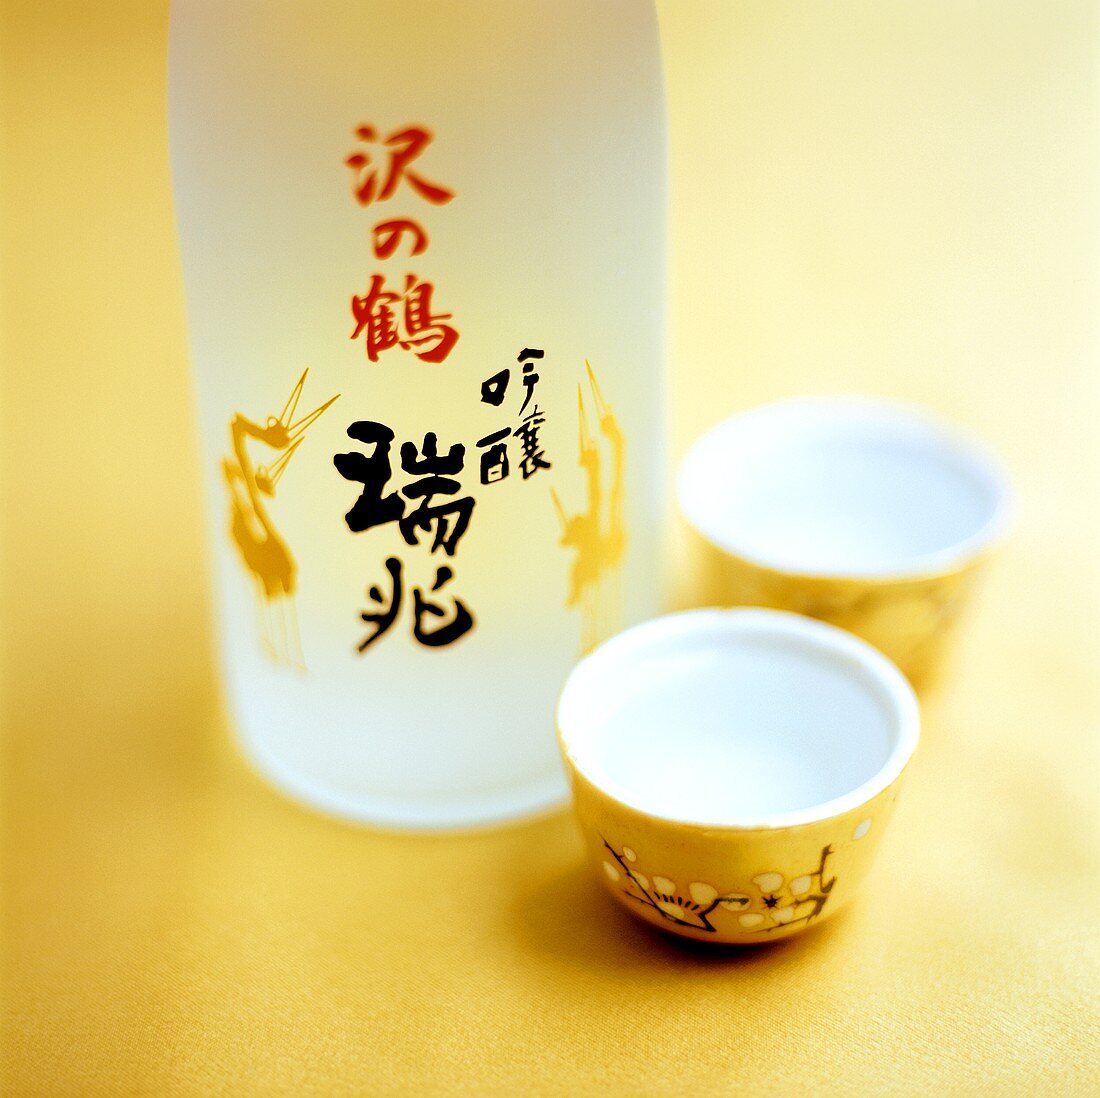 Sake in Flasche und Sakebechern